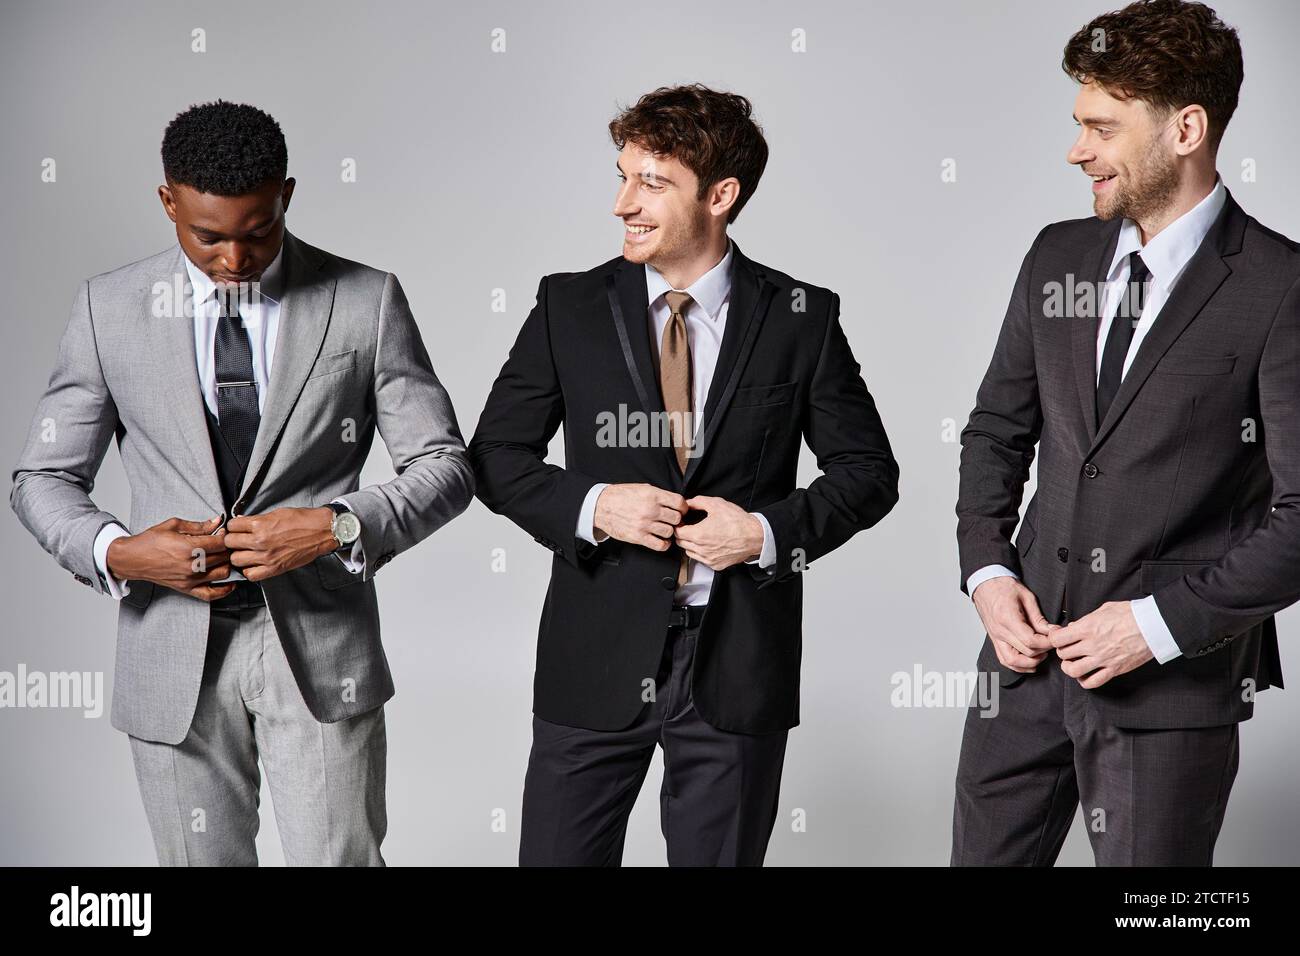 Ansprechende, multikulturelle männliche Models in eleganten Anzügen, die aufrichtig vor grauem Hintergrund lächeln Stockfoto